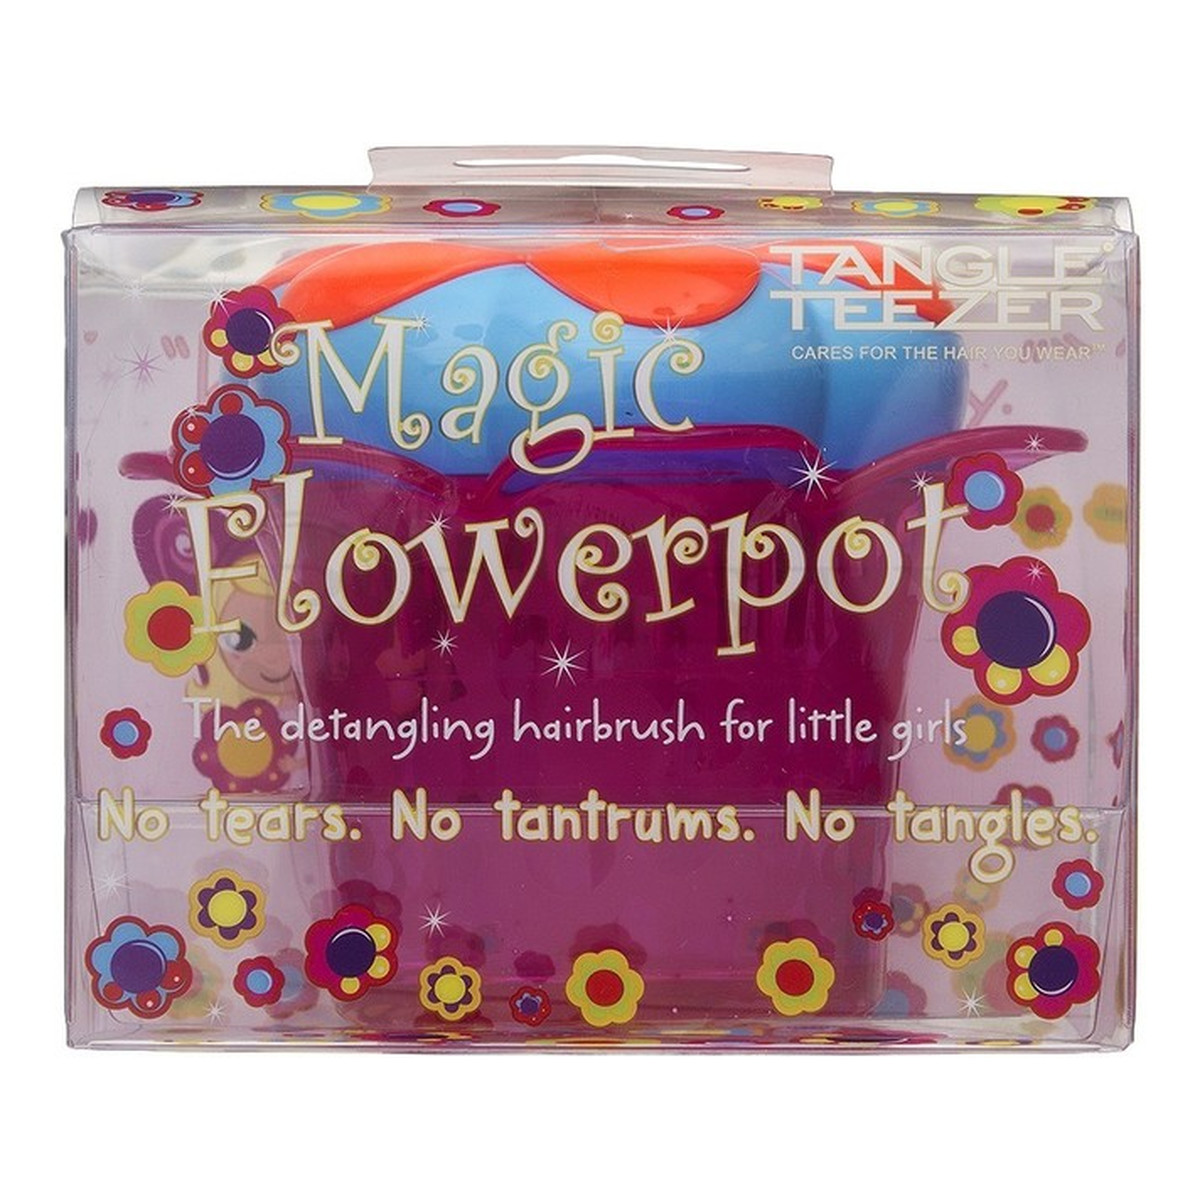 Tangle Teezer Magic Flowerpot Popping Purple Szczotka Do Włosów Dla Dzieci